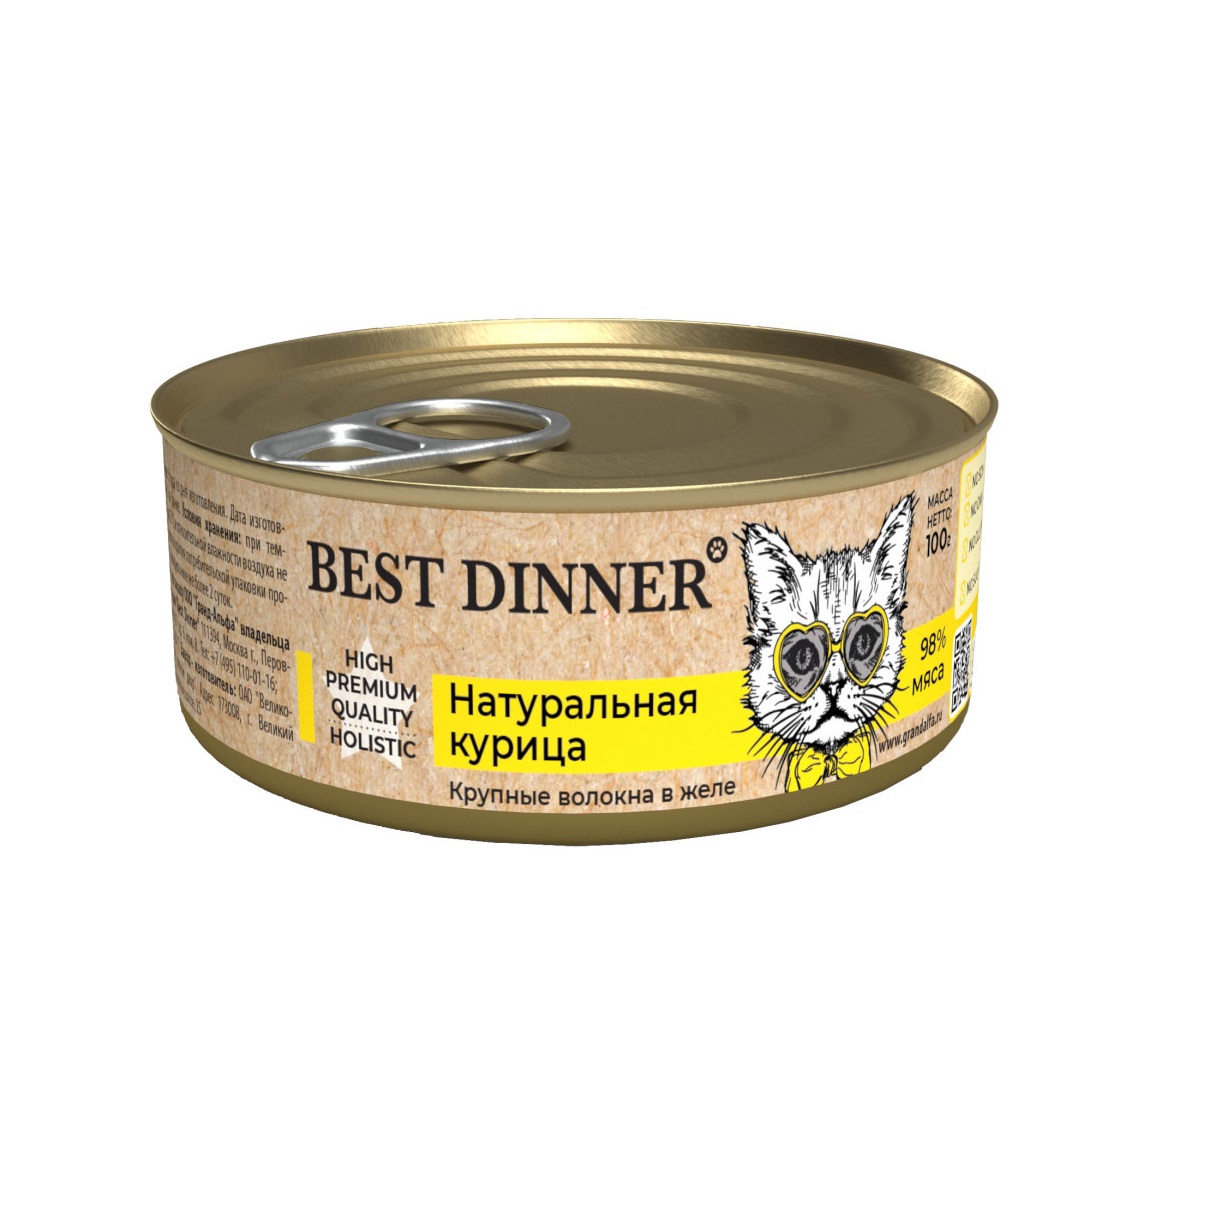 Бест Диннер 100гр - Натуральная Курица - консервы для кошек/котят (Best Dinner)